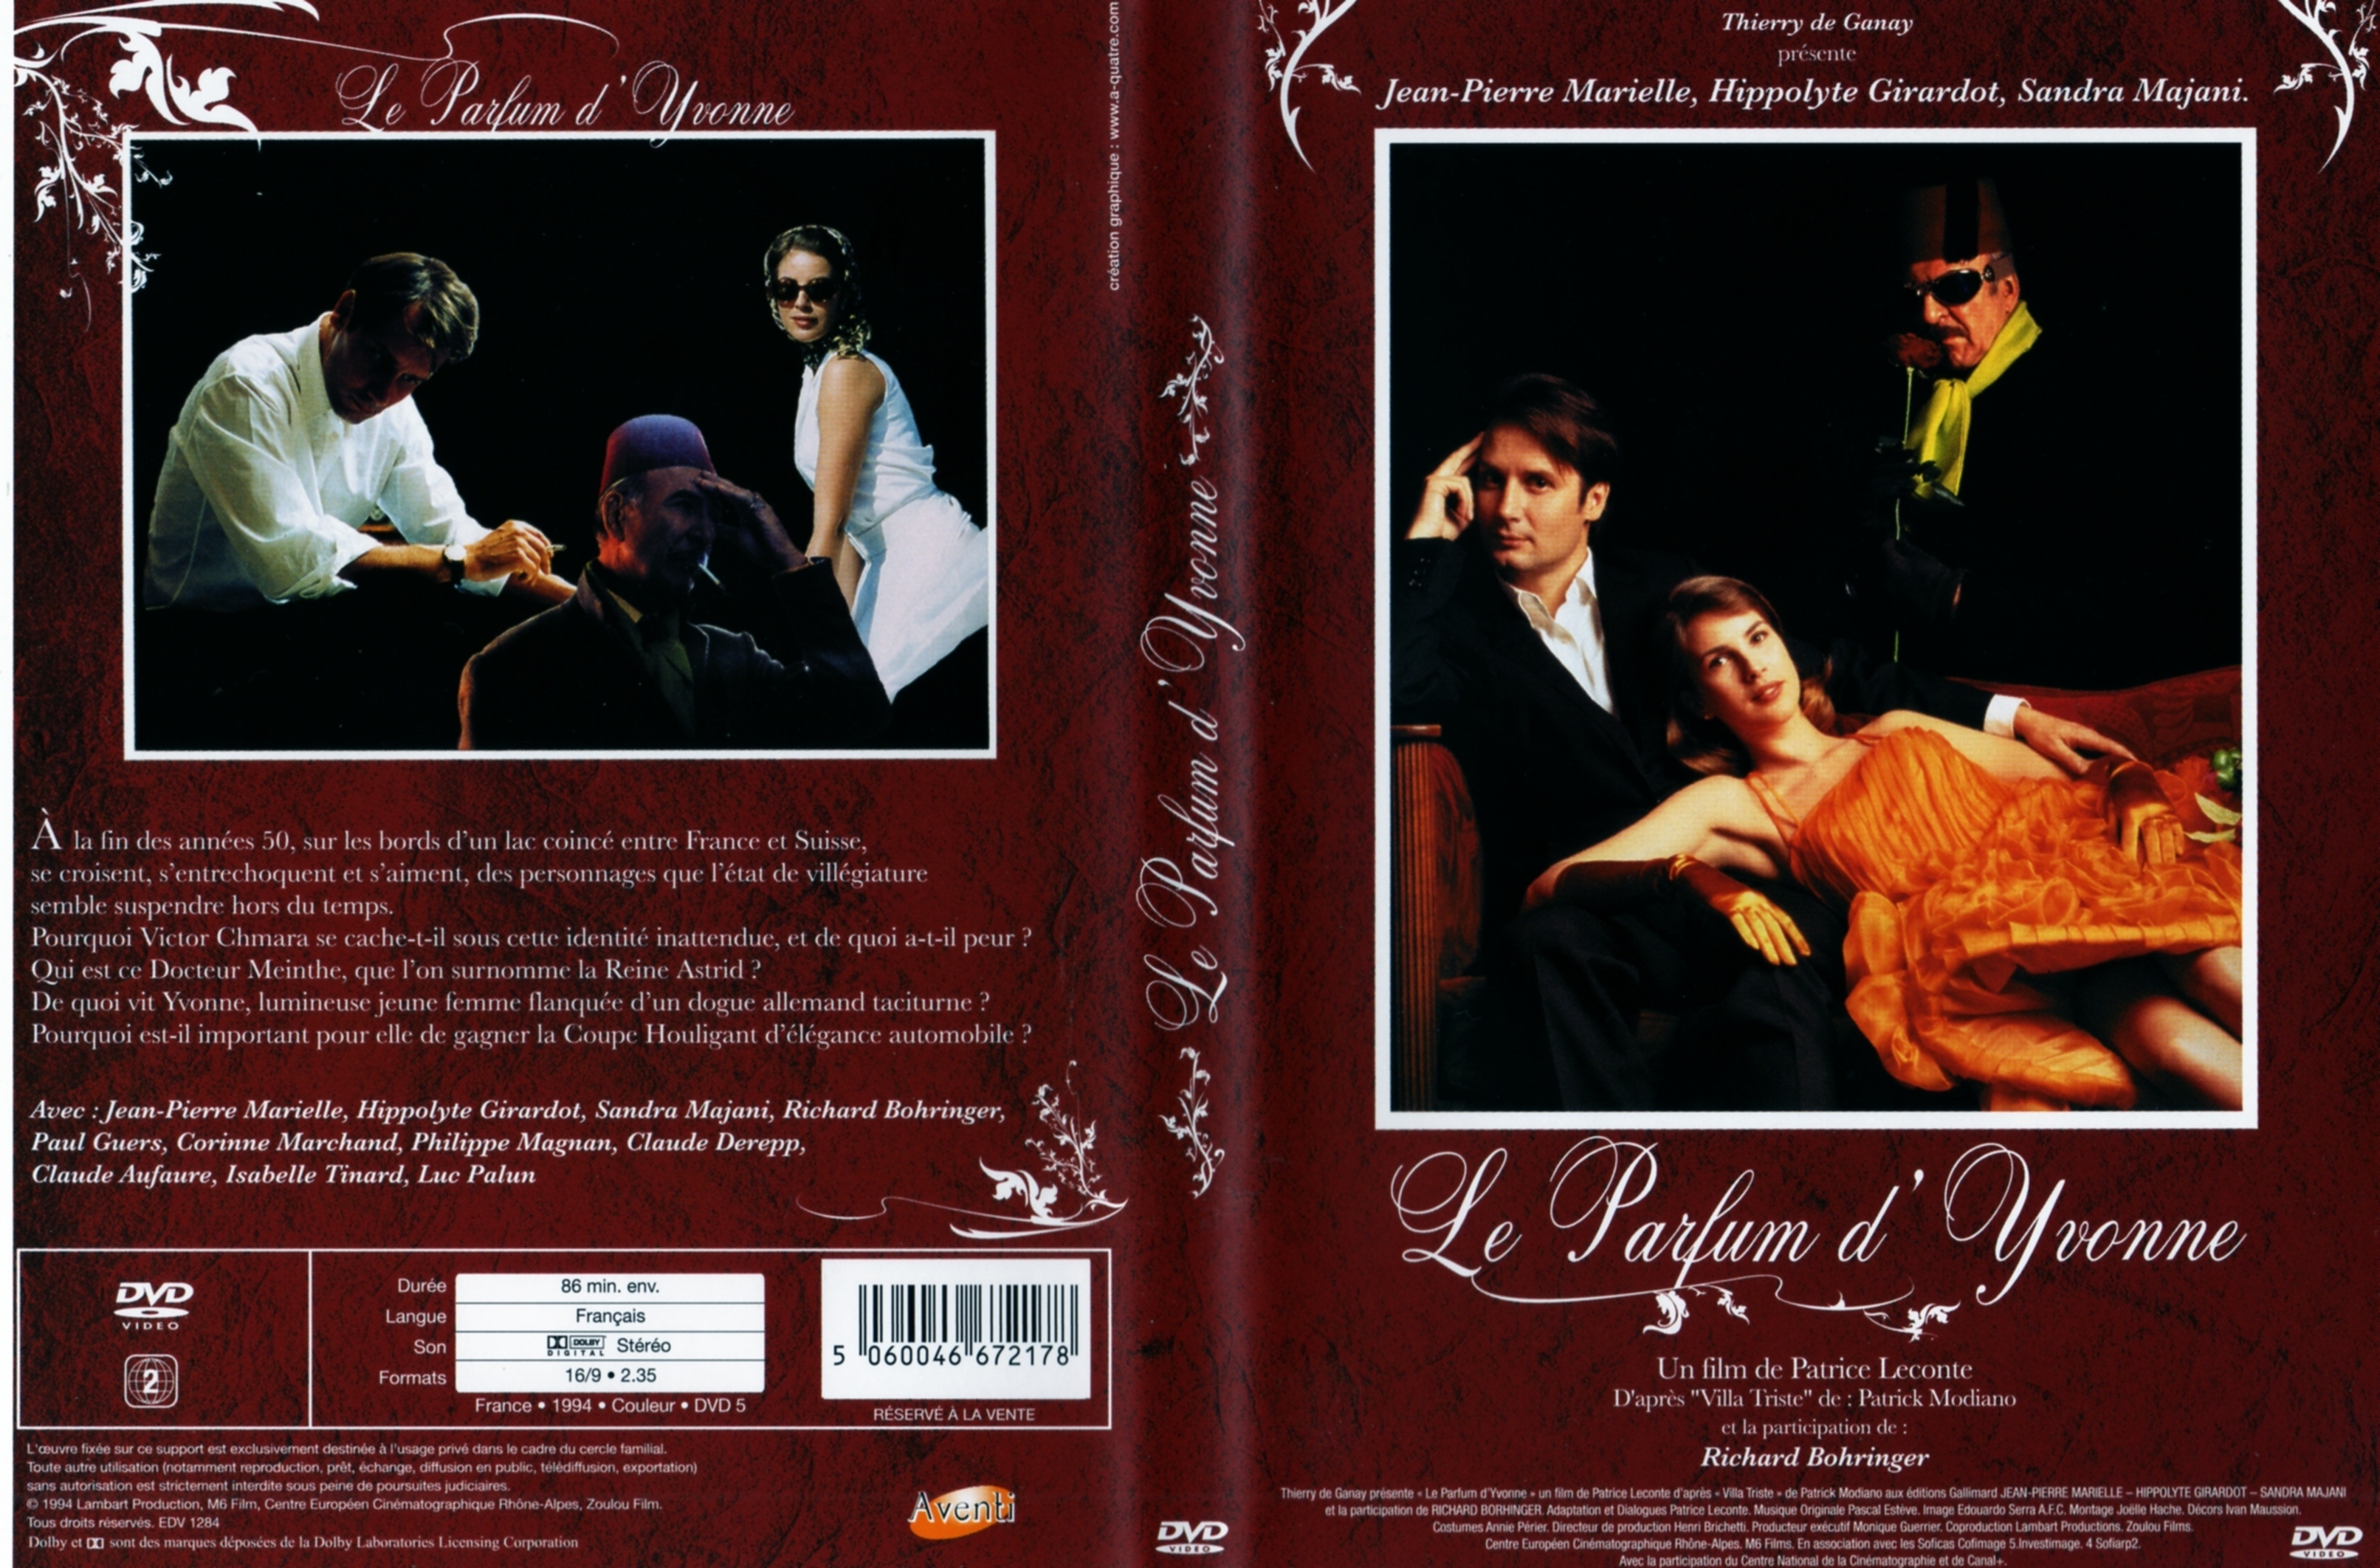 Jaquette DVD Le parfum d